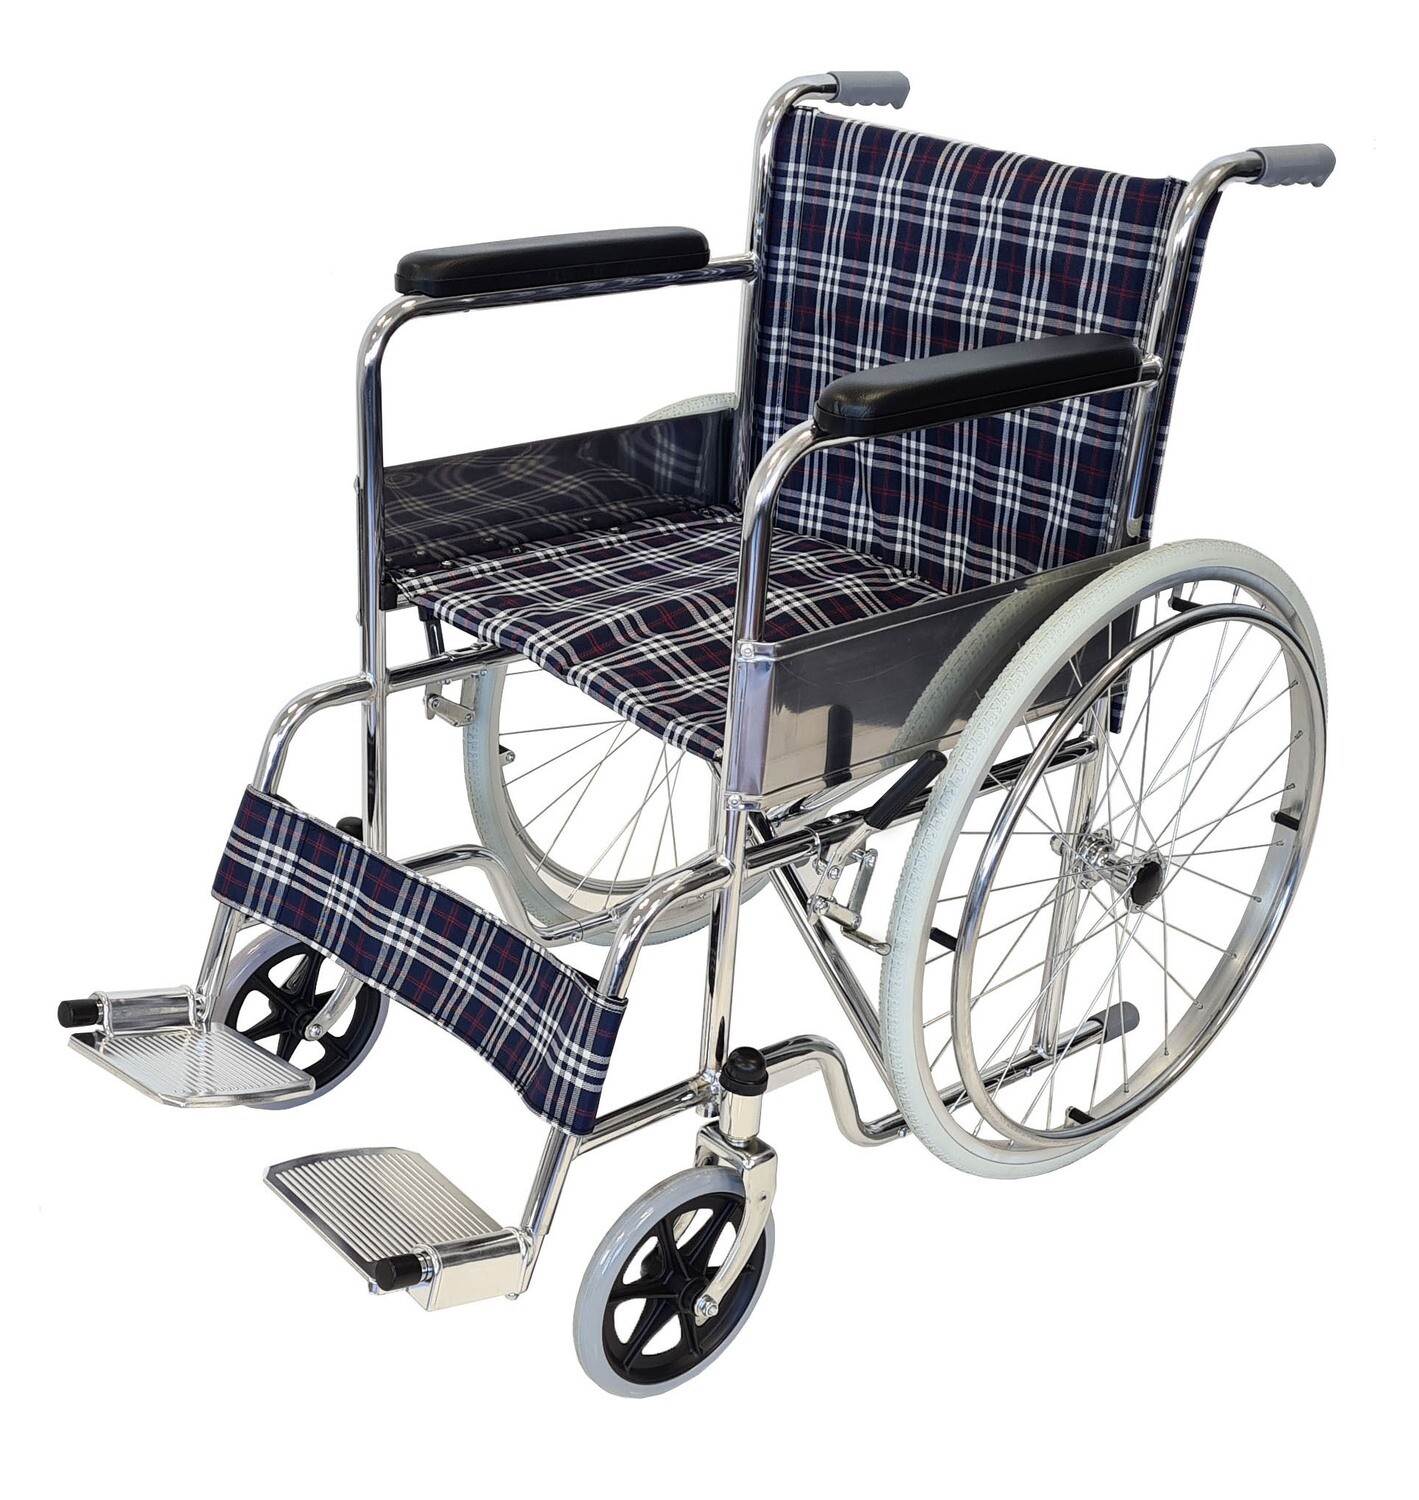 Mobilität und Komfort mit dem abc HOME Rollstuhl!
Unabhängigkeit und Freiheit im Alltag: Dieser faltbare Rollstuhl aus verchromtem Stahl und Nylon bietet Mobilitätsunterstützung und Komfort für Personen mit eingeschränkter Mobilität.
Kompakt und leicht verstaubar: Der Rollstuhl lässt sich leicht zusammenklappen und ist somit platzsparend verstaubar und kann im Auto transportiert werden.
Verstellbare Rückenlehne: Die Rückenlehne ist individuell an Ihre Bedürfnisse anpassbar, um eine bequeme Sitzposition zu gewährleisten.
Feststellbremse: Die Feststellbremse sorgt für zusätzliche Sicherheit und verhindert ein unbeabsichtigtes Wegrollen.
Spezifikationen:
Marke: abc HOME
Maße (aufgeklappt): 23 cm T x 92 cm B x 88 cm H
Maße (zusammengeklappt): 94 cm T x 22 cm B x 87 cm H
Material: Stahl (verchromt), Nylon
Gewicht: 14,3 kg
Max. Belastbarkeit: 110 kg
Räder (Vollreifen): 19,5 cm Ø
Sitzhöhe: 48 cm
Sitzbreite: 45 cm
Sitztiefe: 40 cm
Griffbreite: 45 cm
Eigenschaften:
Klappbar
Verstellbare Rückenlehne
Feststellbremse
Keywords: Rollstuhl, Stahl, Nylon, Mobilität, Komfort, Sicherheit, Senioren, Behinderte, Zuhause, kompakt, faltbar, verstellbar, Feststellbremse, Geschenkidee